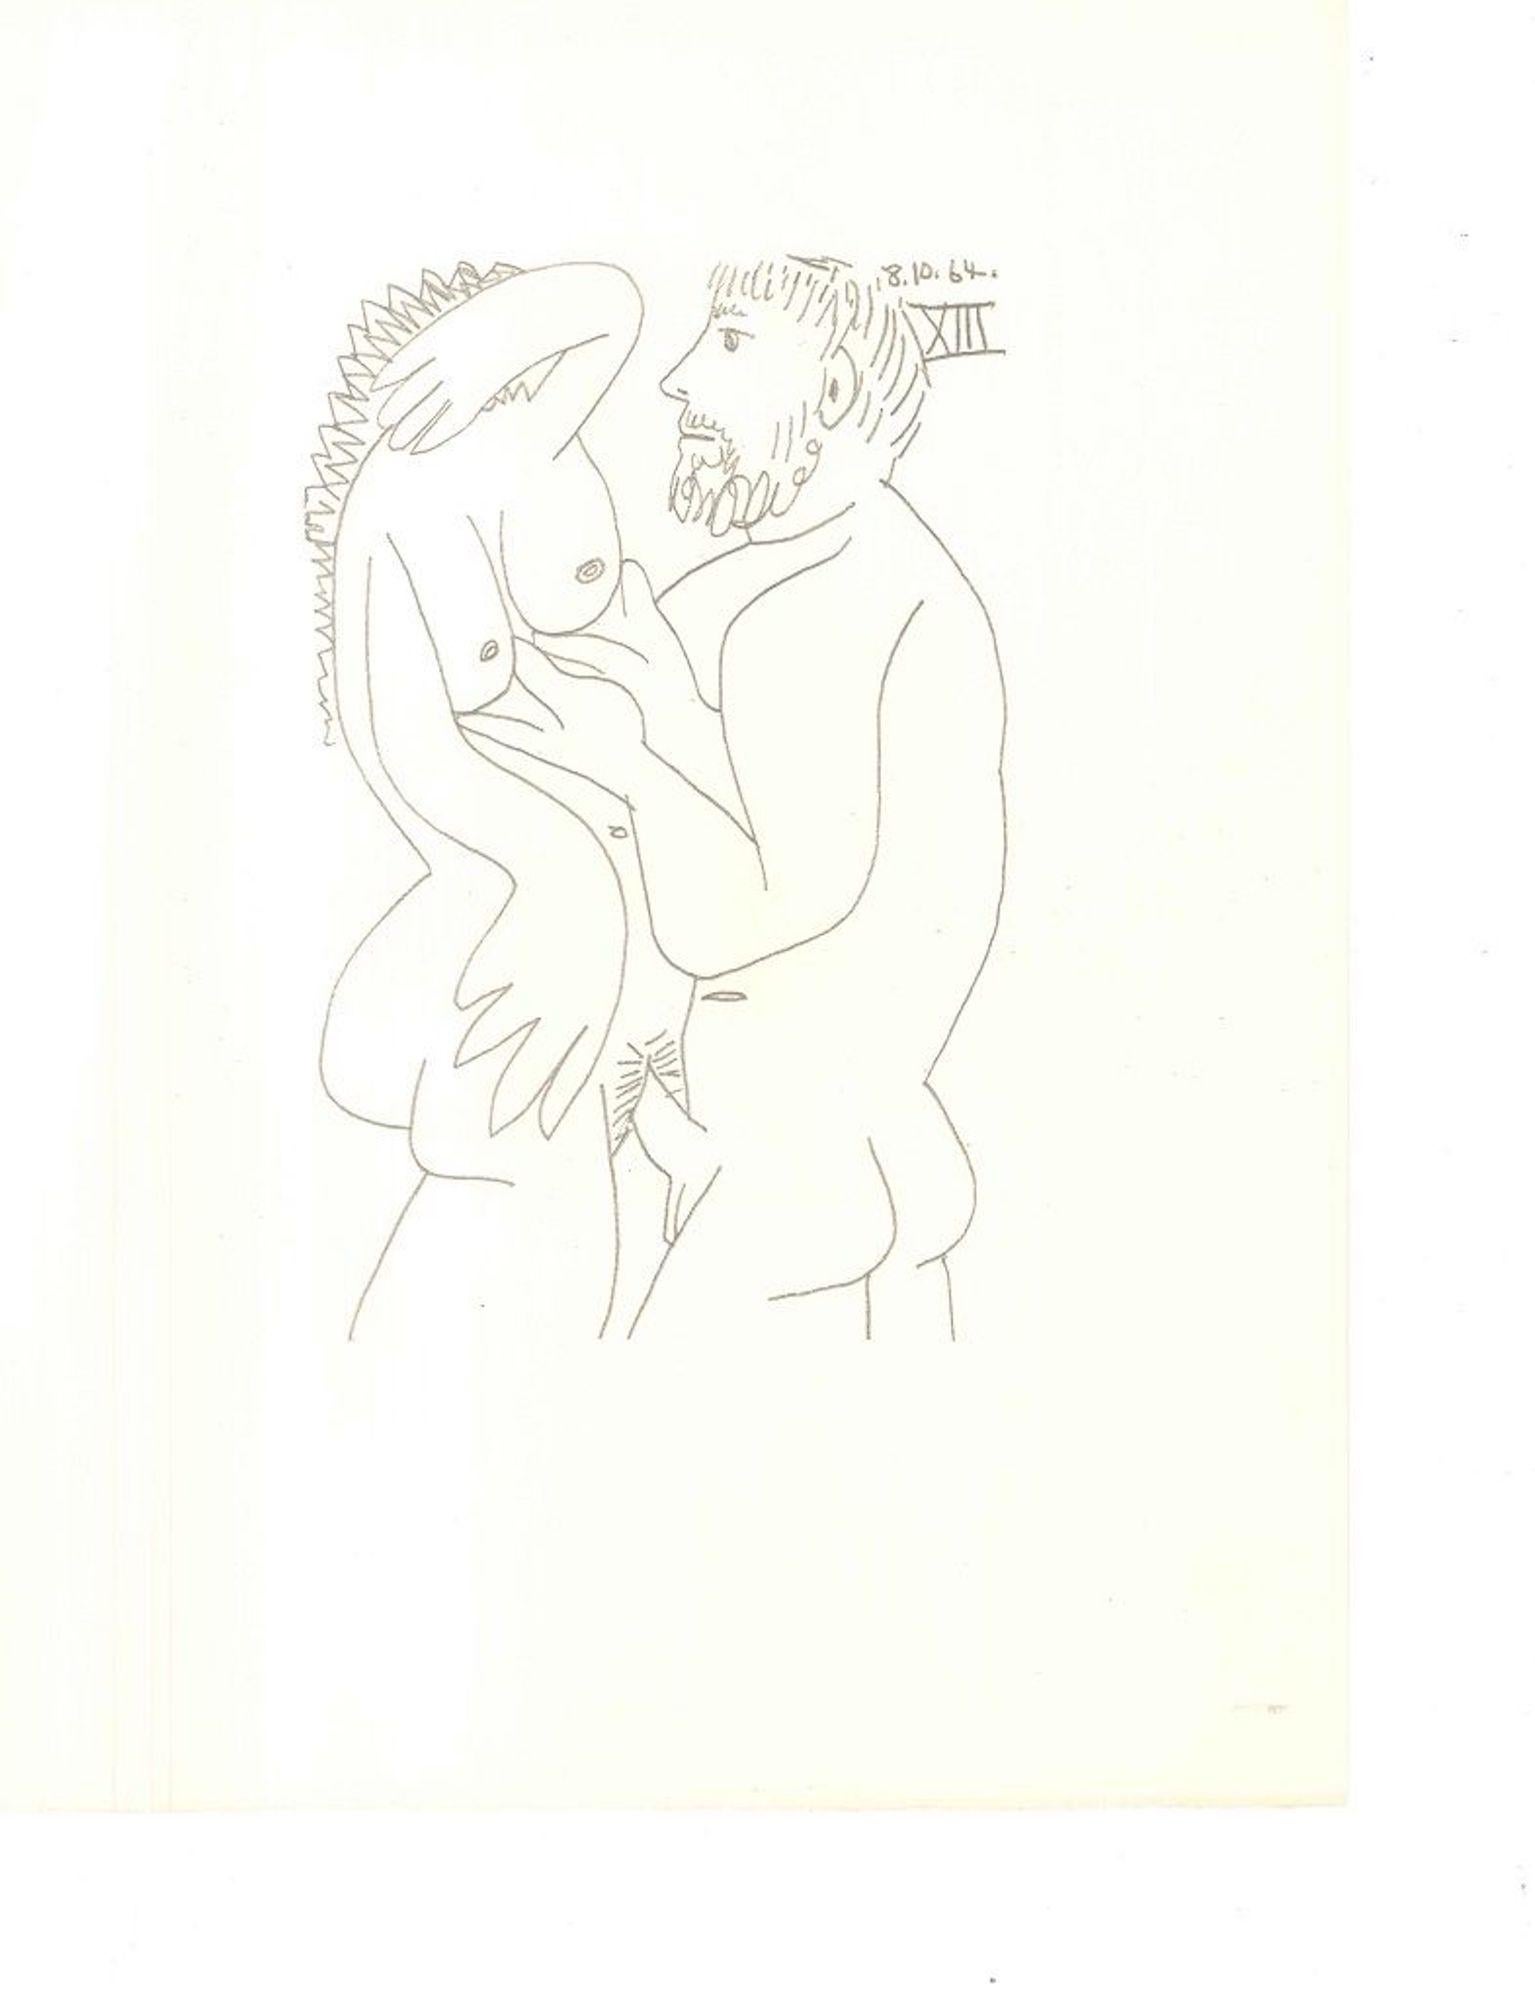 Le Goût du Bonheur - 18.10.64 XIII - Lithograph After P. Picasso